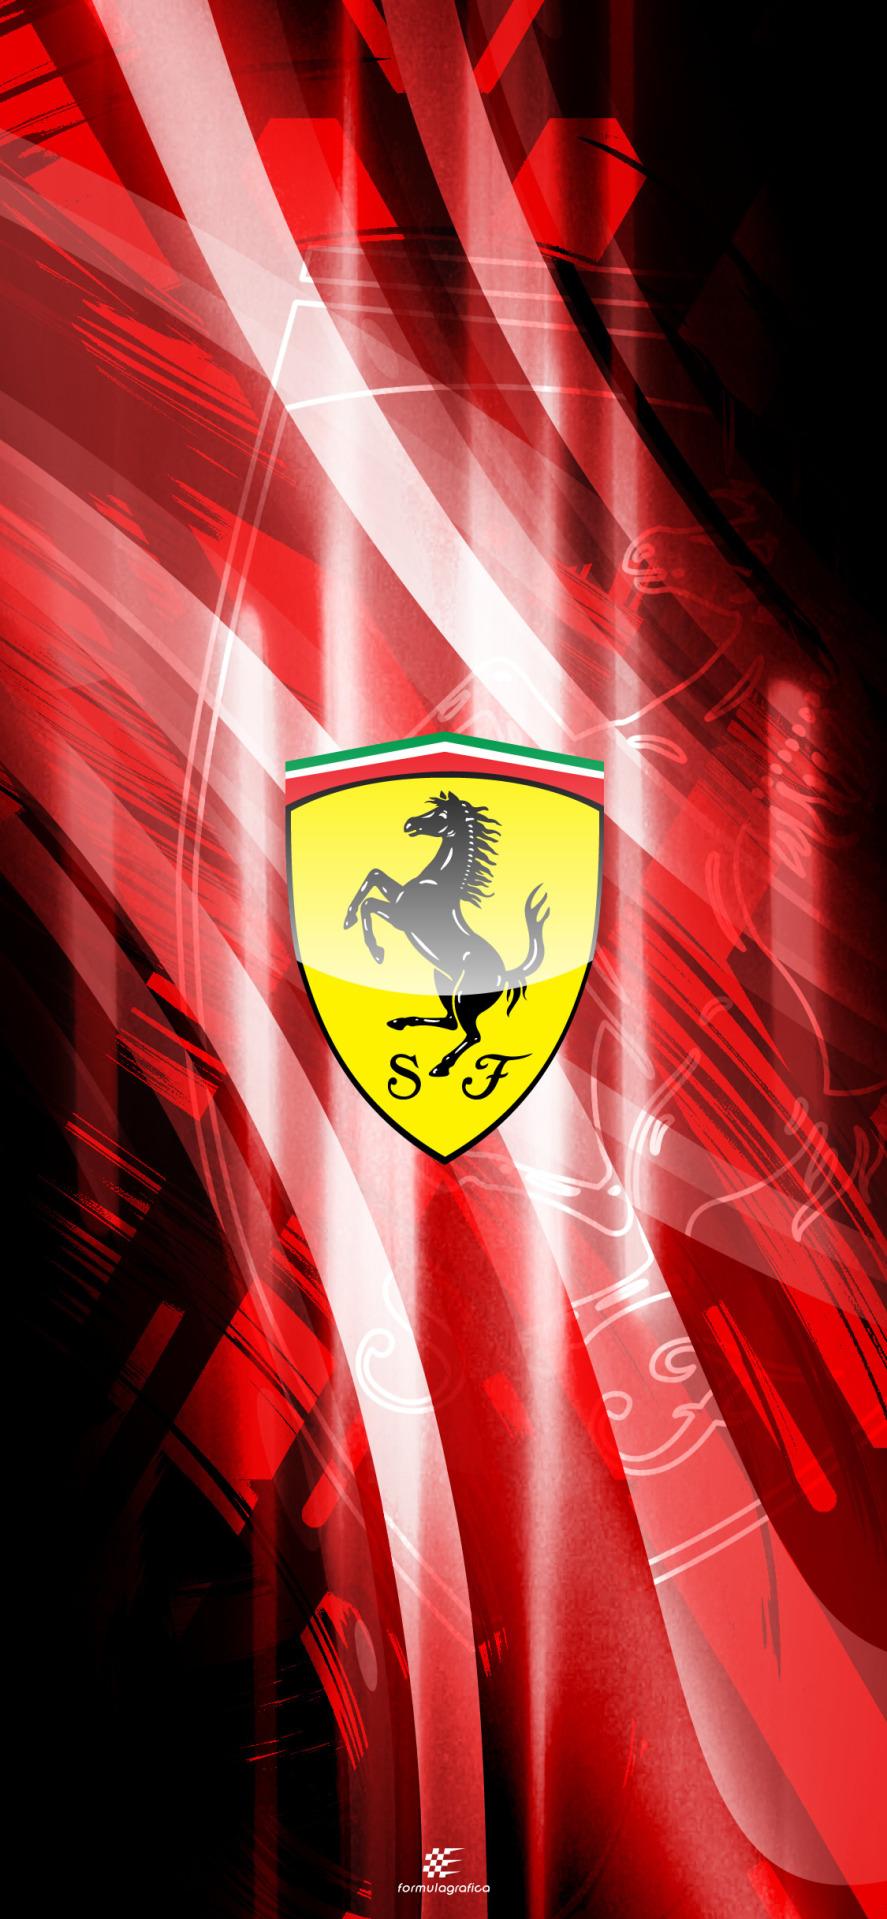 Formulagrafica Muscle Fiber Scuderia Ferrari Mission Winnow If